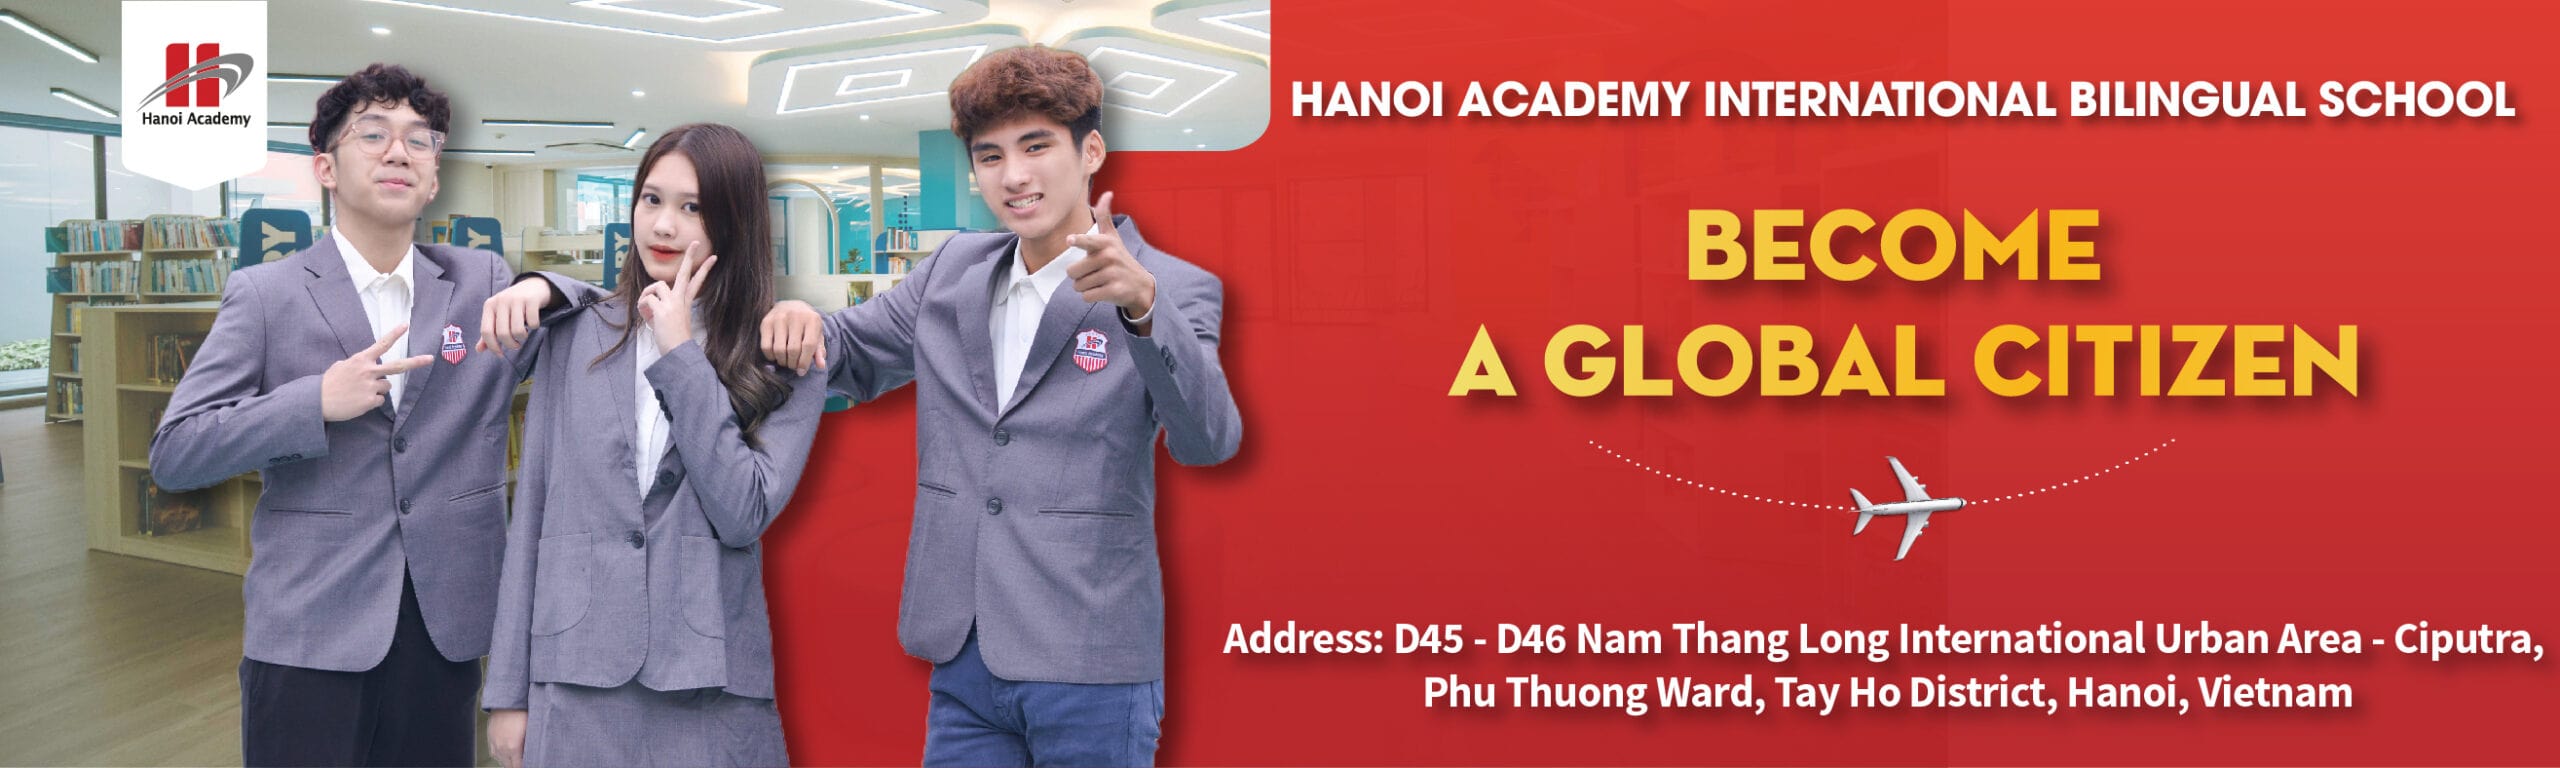 Hanoi Academy